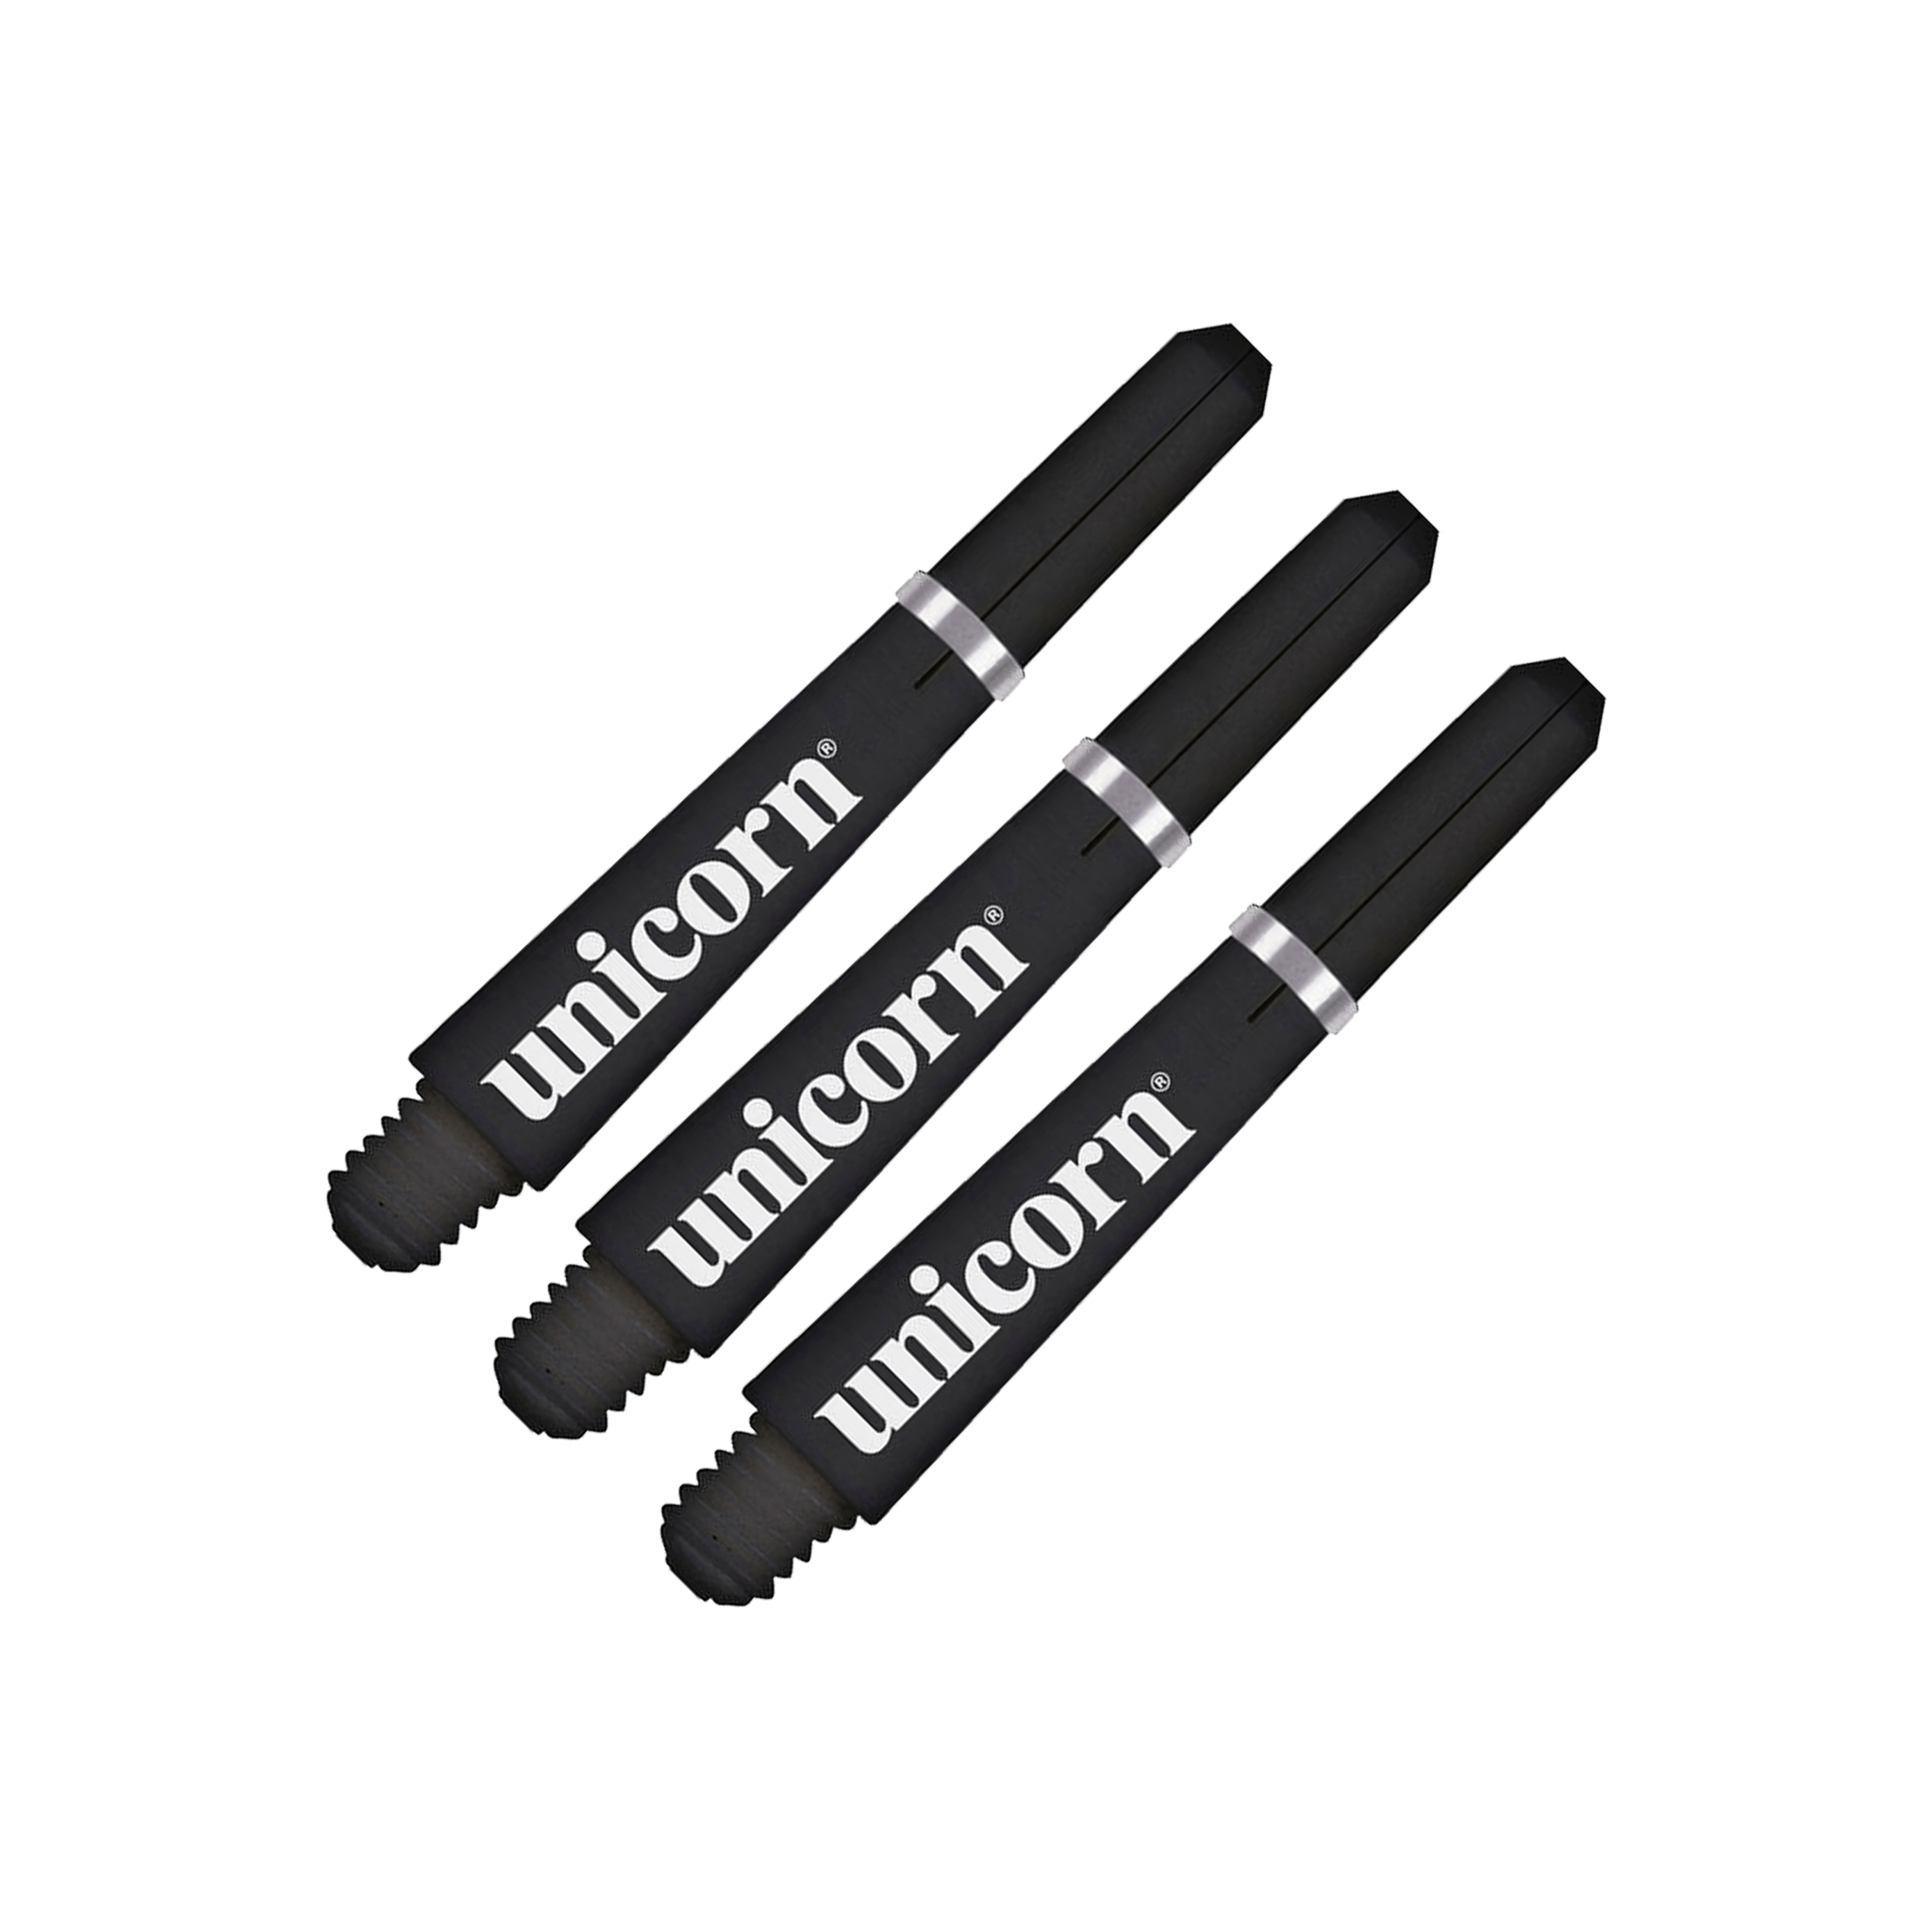 Unicorn Gripper 4 Polycarbonate Dart Shafts Black / Short (35mm) Shafts